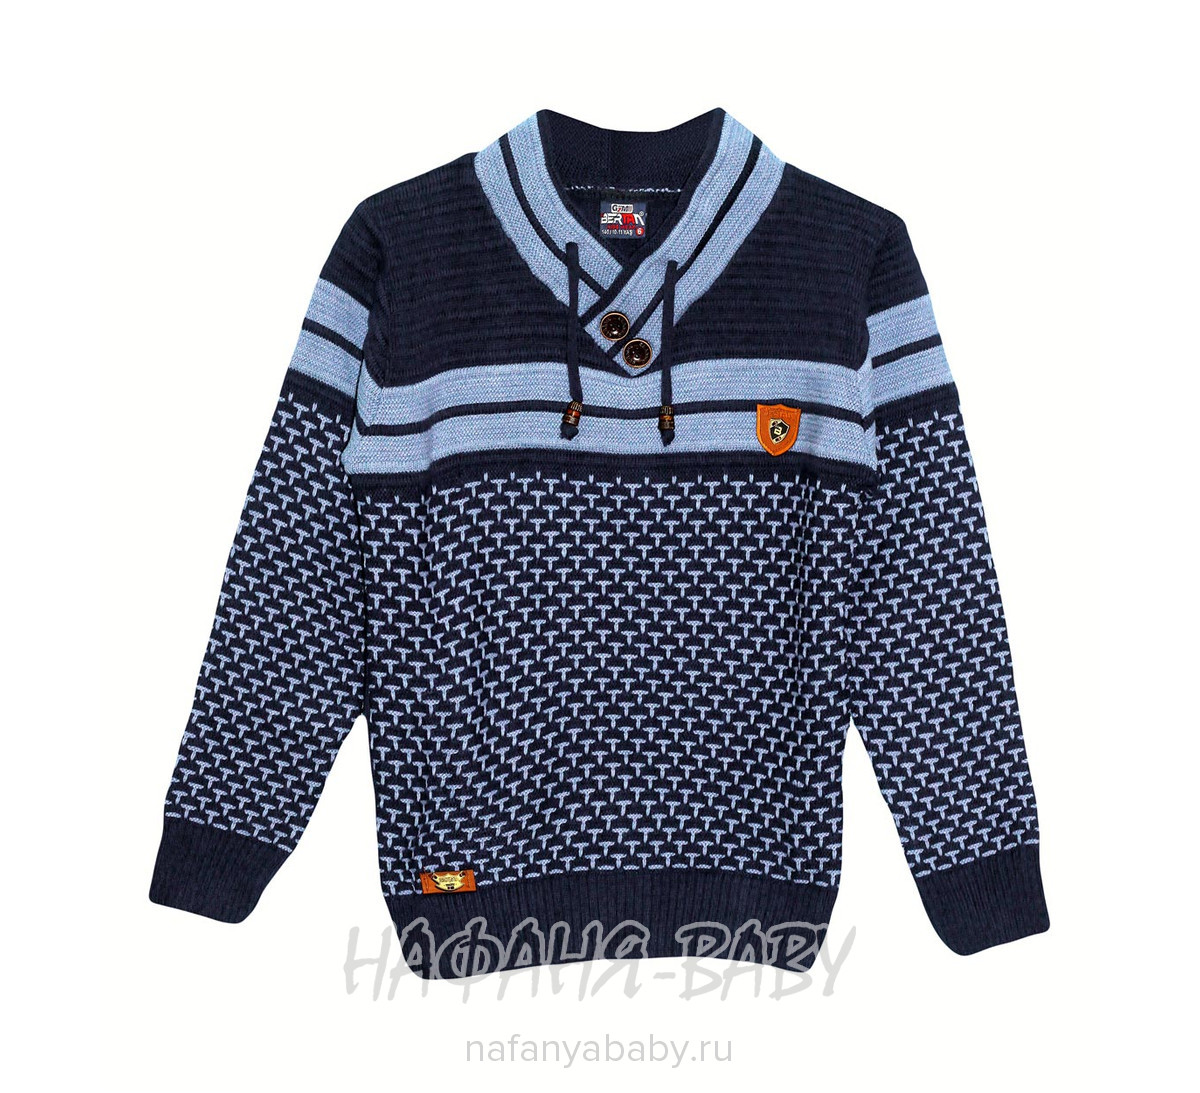 Вязанный пуловер для мальчика BERTAN арт: 851, 10-15 лет, молодежный, оптом Турция